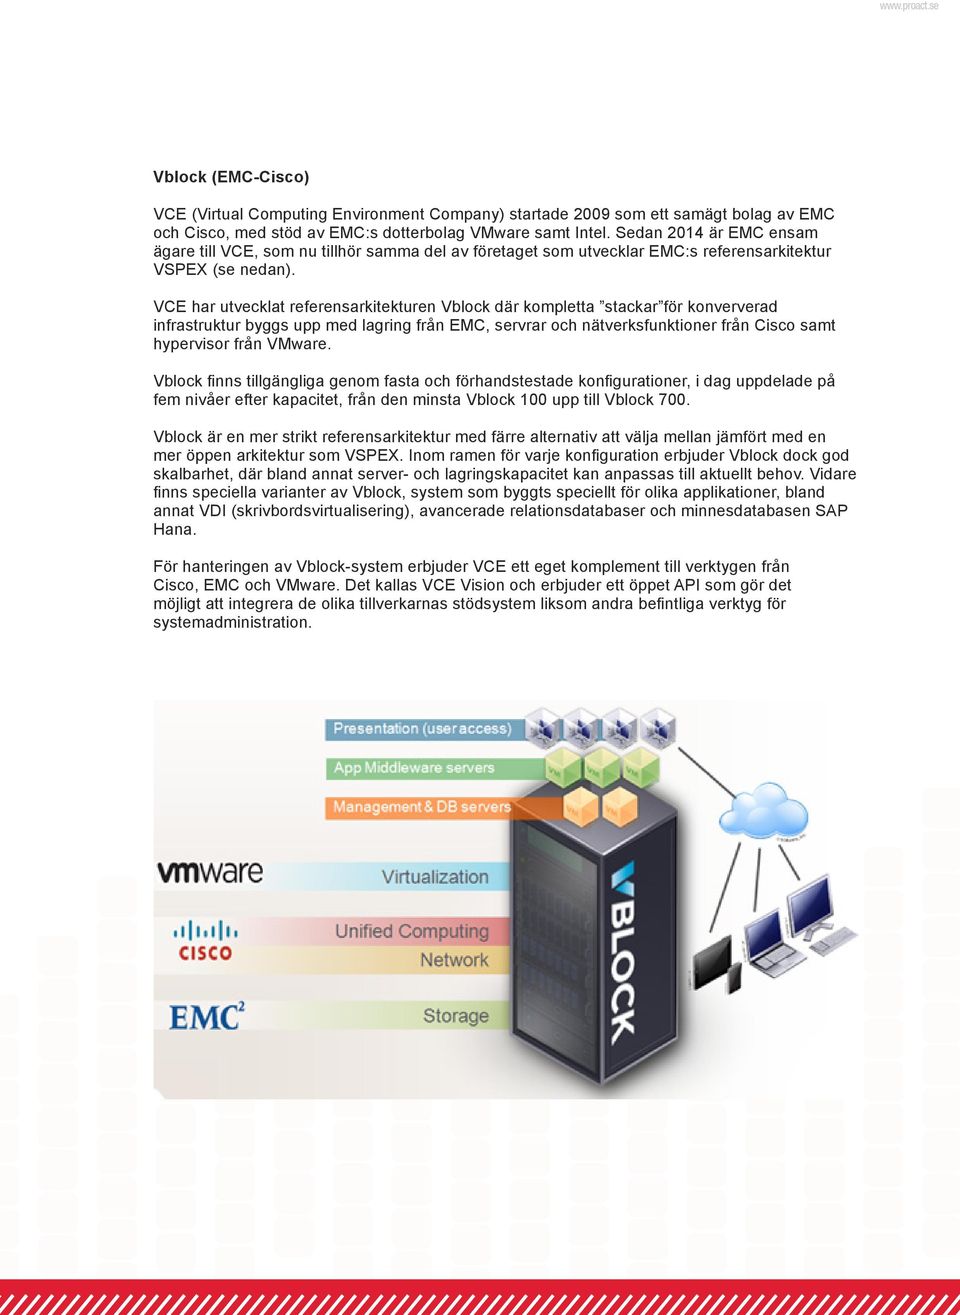 VCE har utvecklat referensarkitekturen Vblock där kompletta stackar för konververad infrastruktur byggs upp med lagring från EMC, servrar och nätverksfunktioner från Cisco samt hypervisor från VMware.